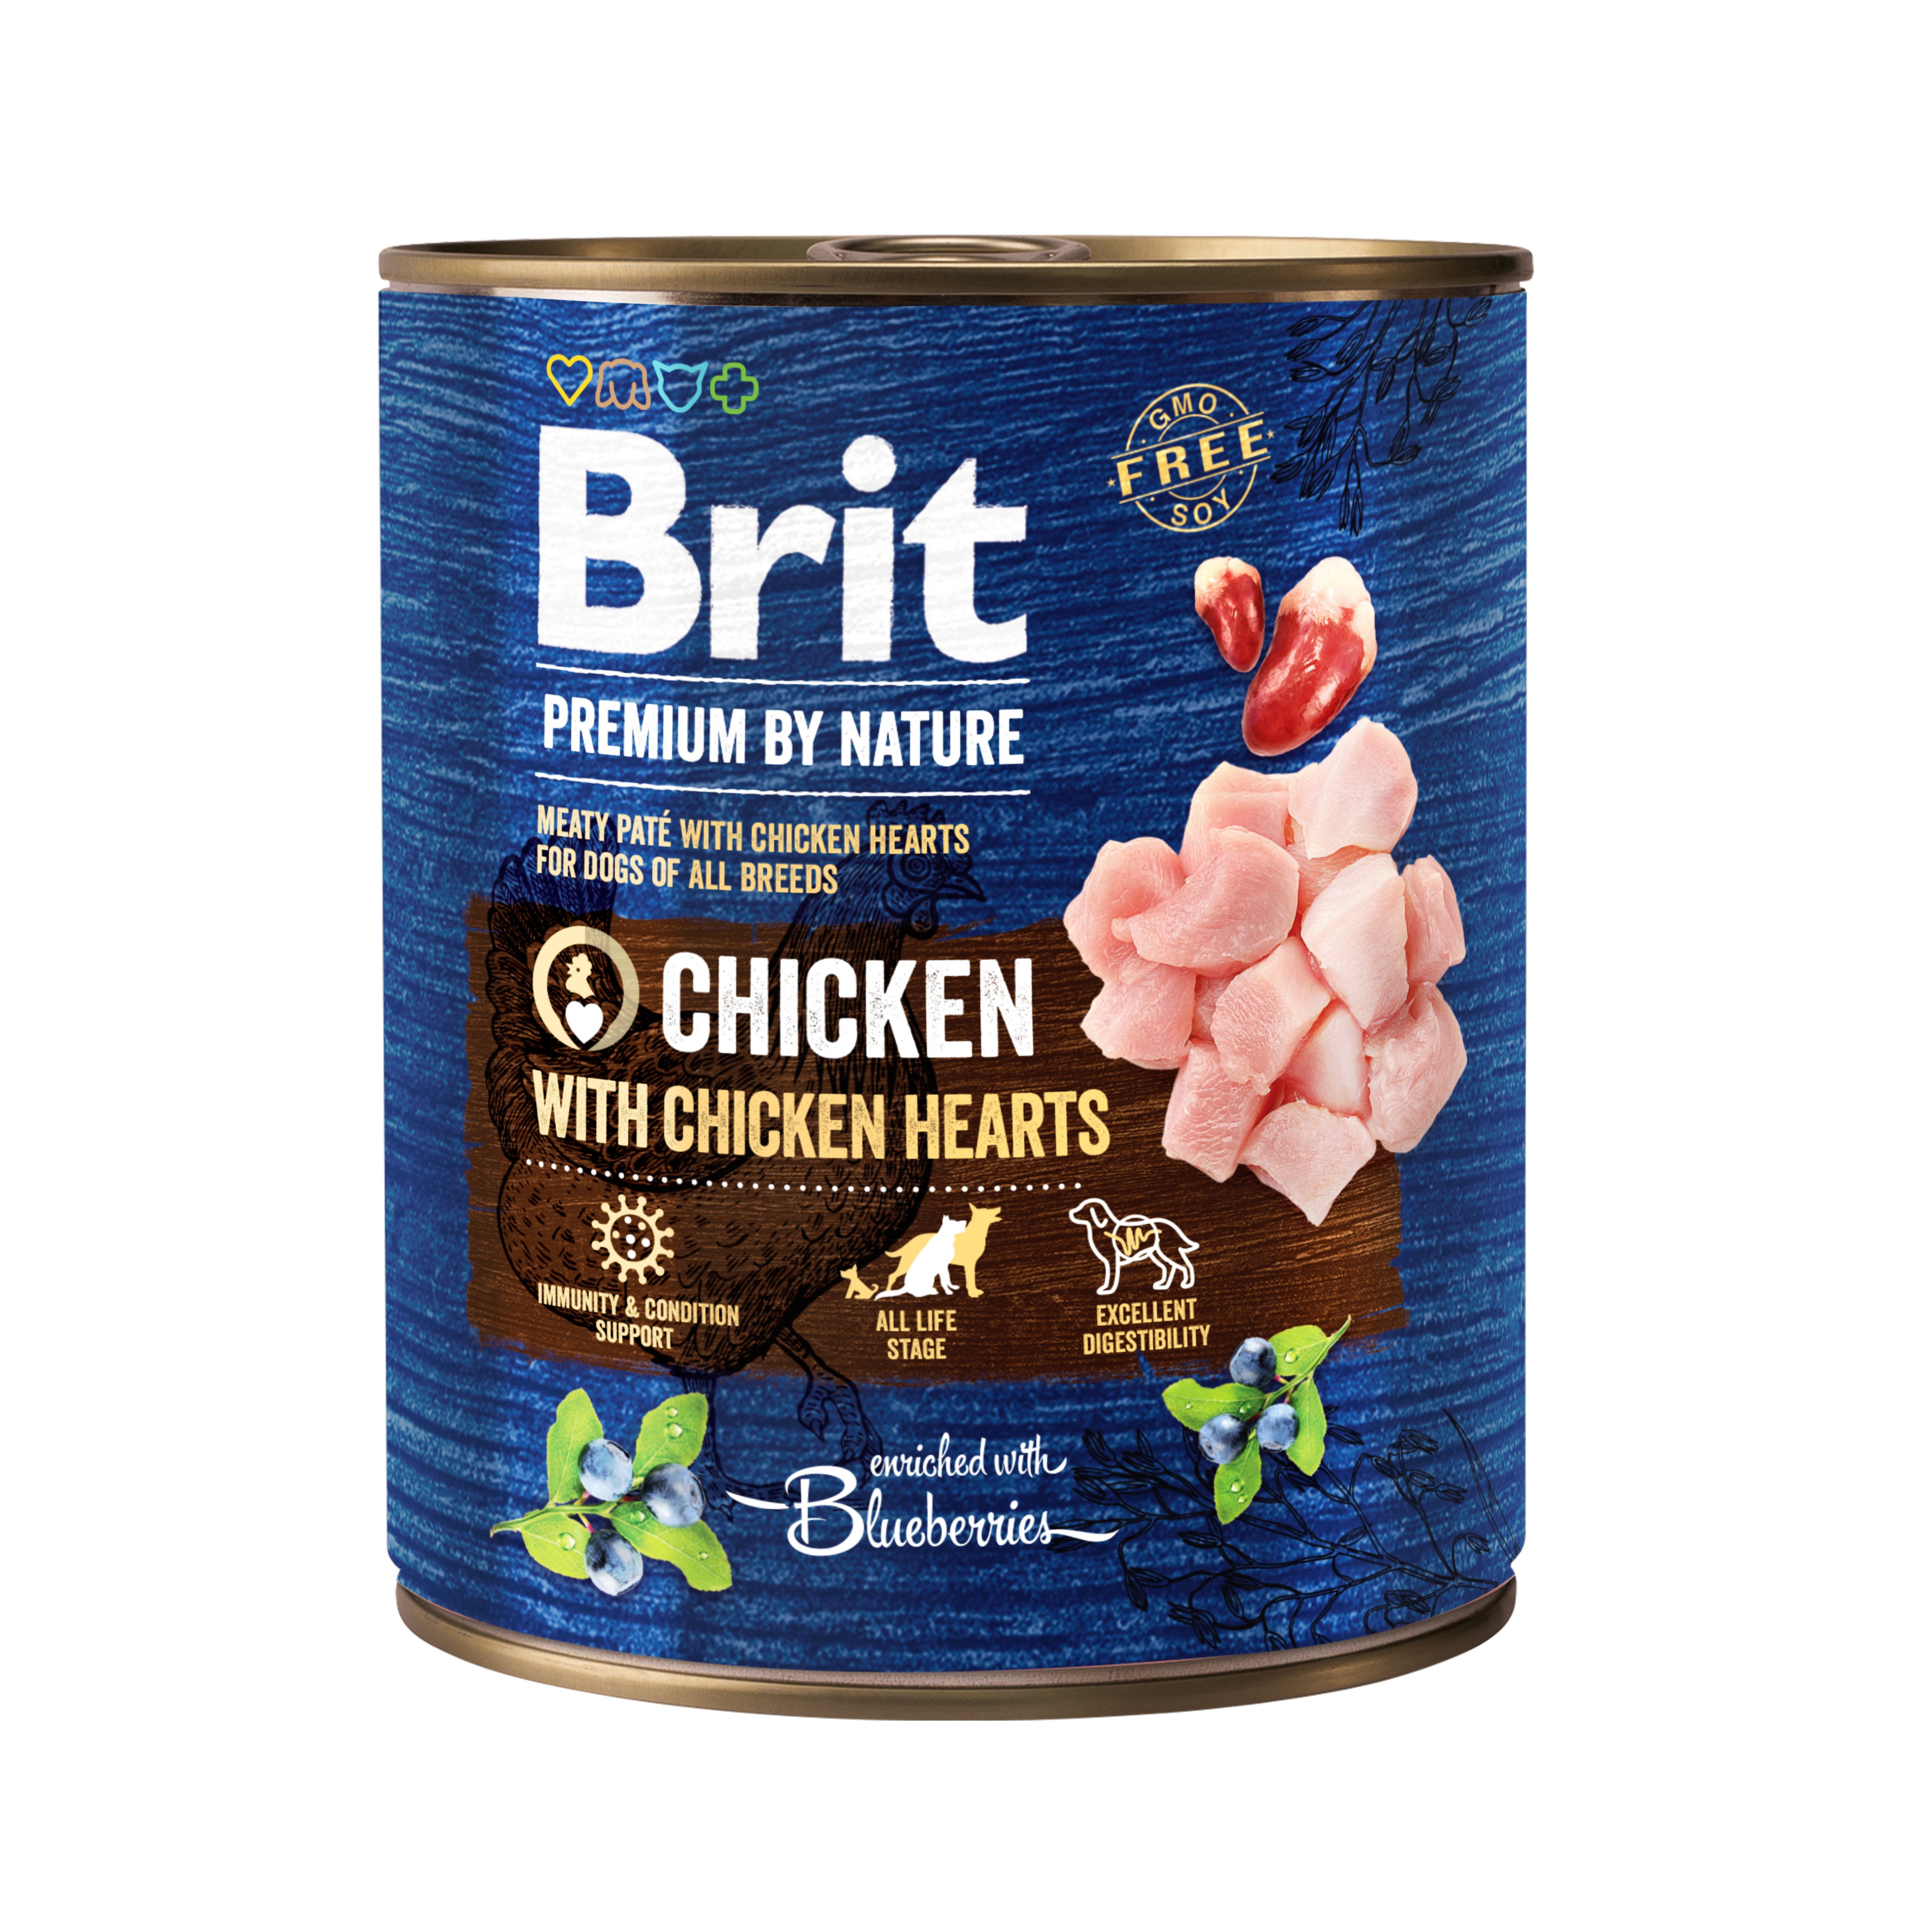 Беззерновой влажный корм для собак Brit Premium, с курицей и куриными сердечками, 800 г - фото 1